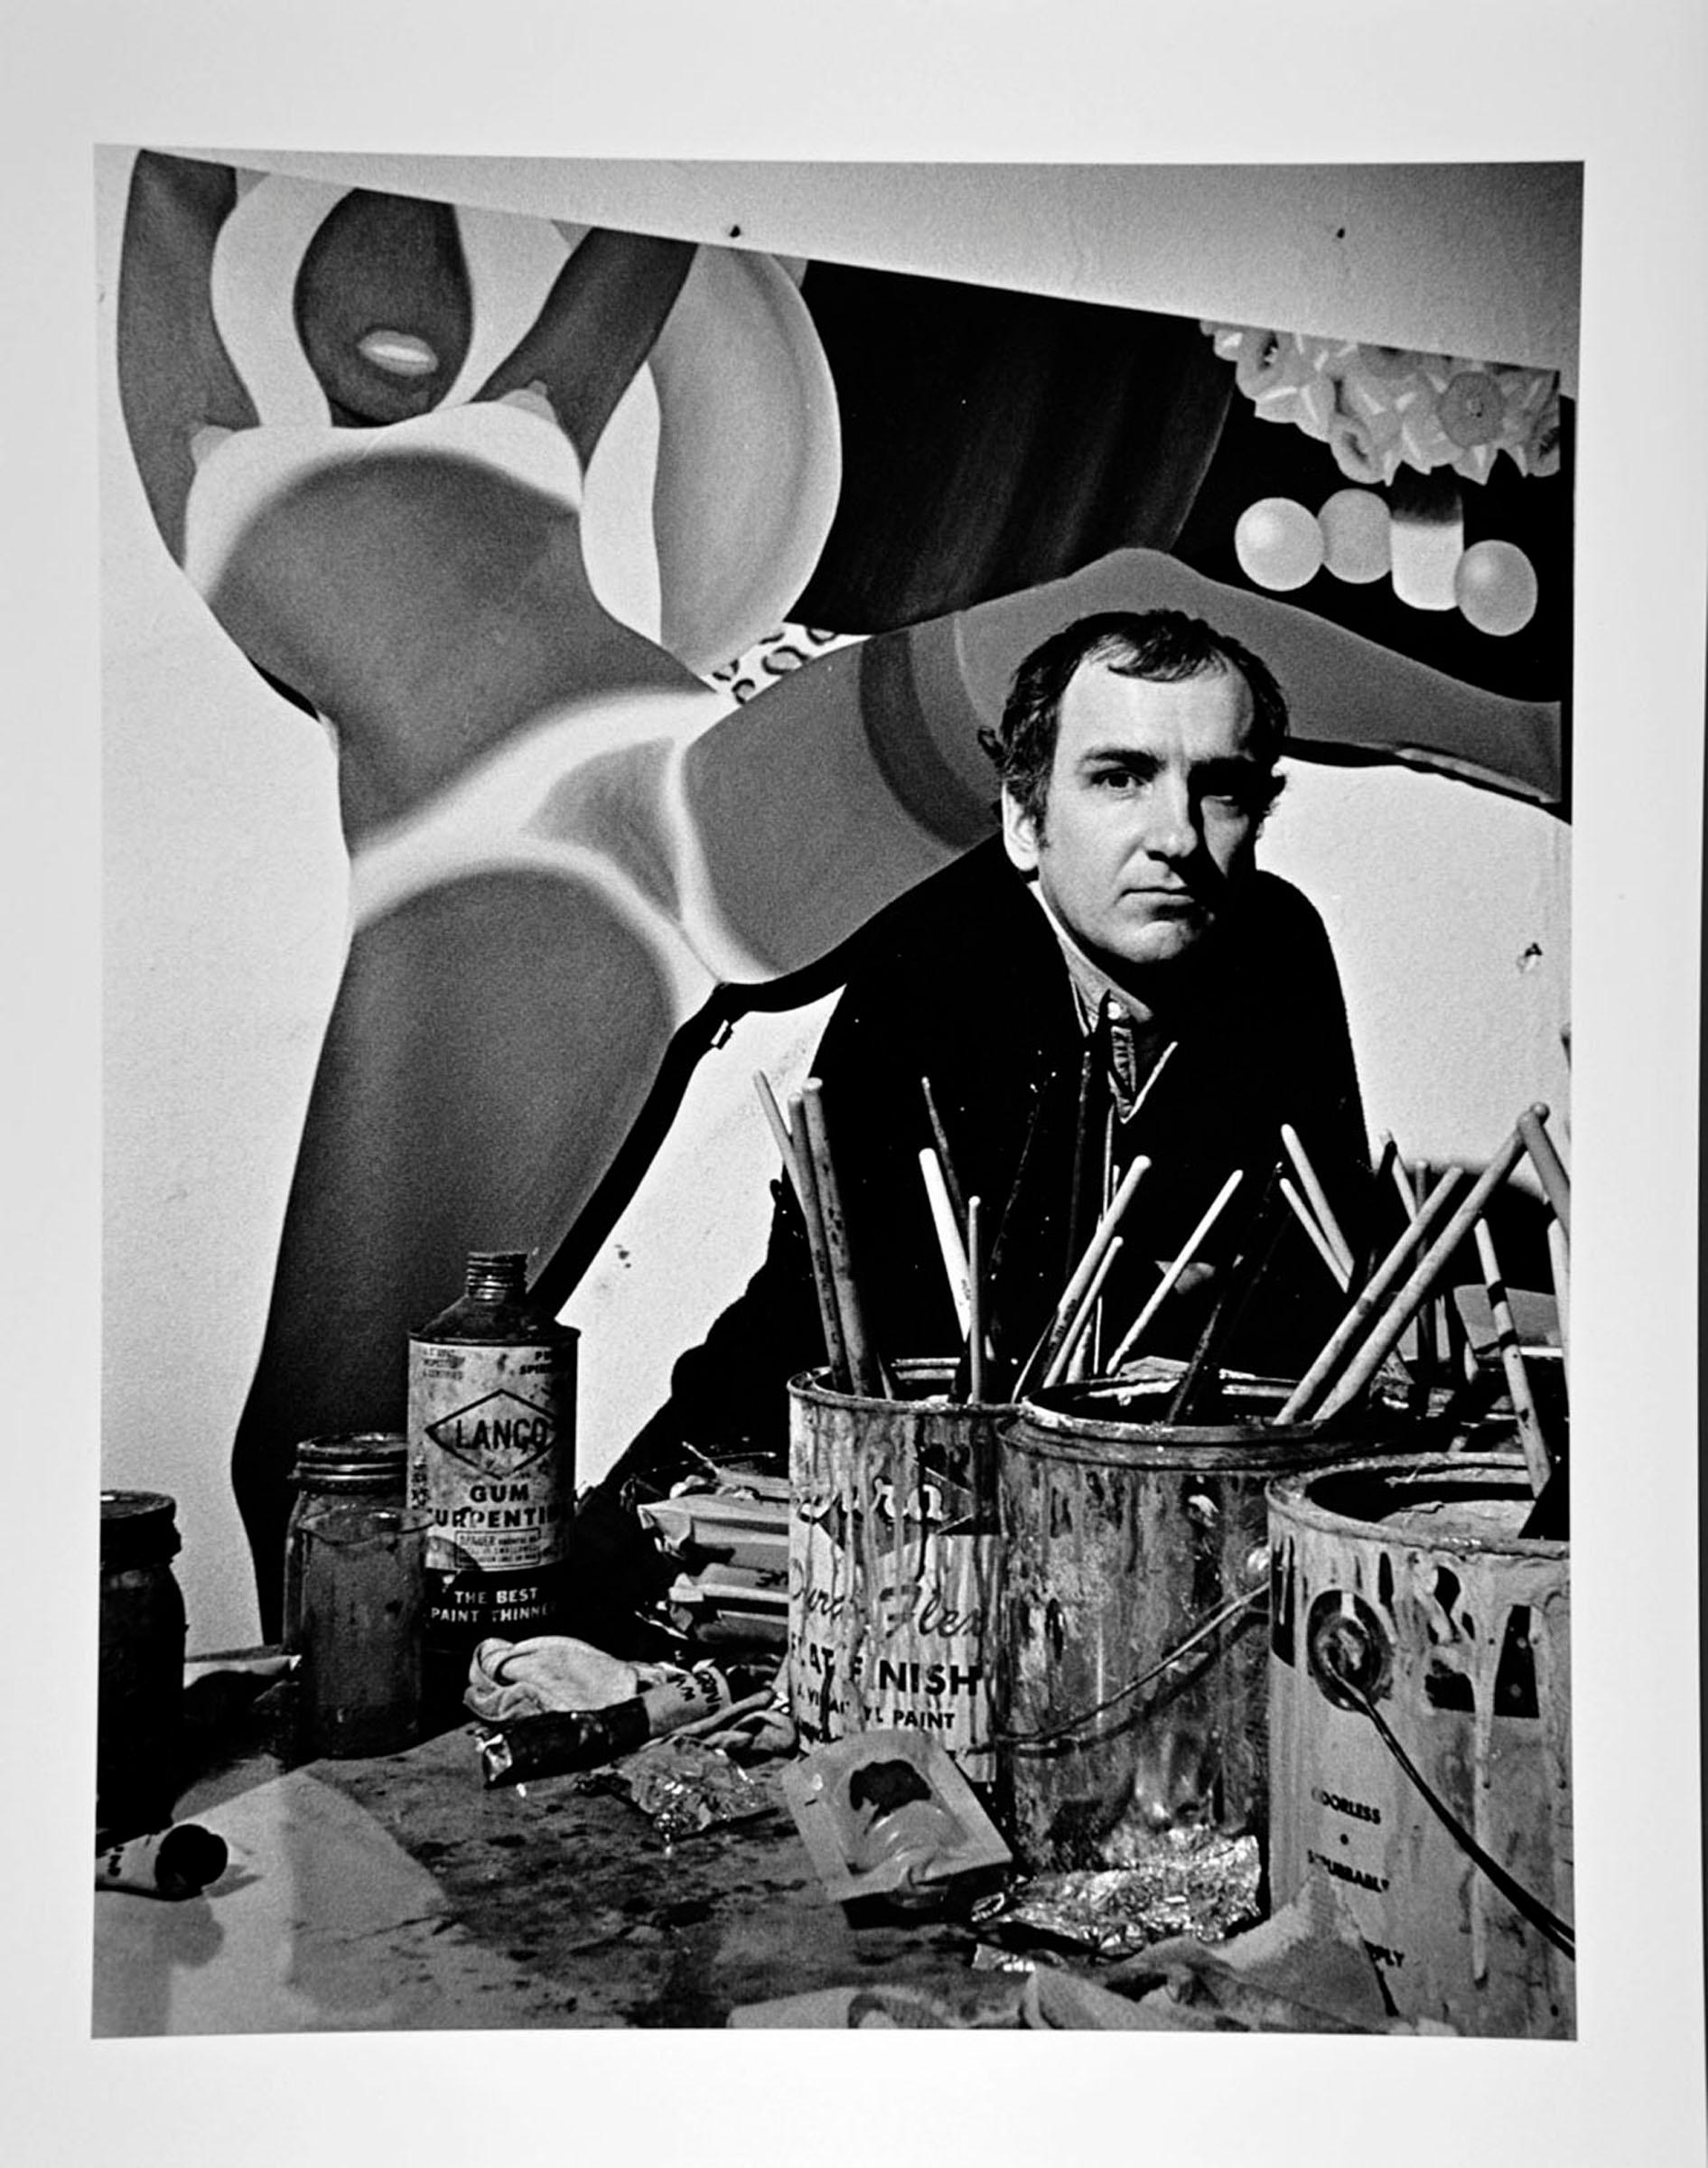  Der Künstler Tom Wesselmann in seinem Atelier in New York City